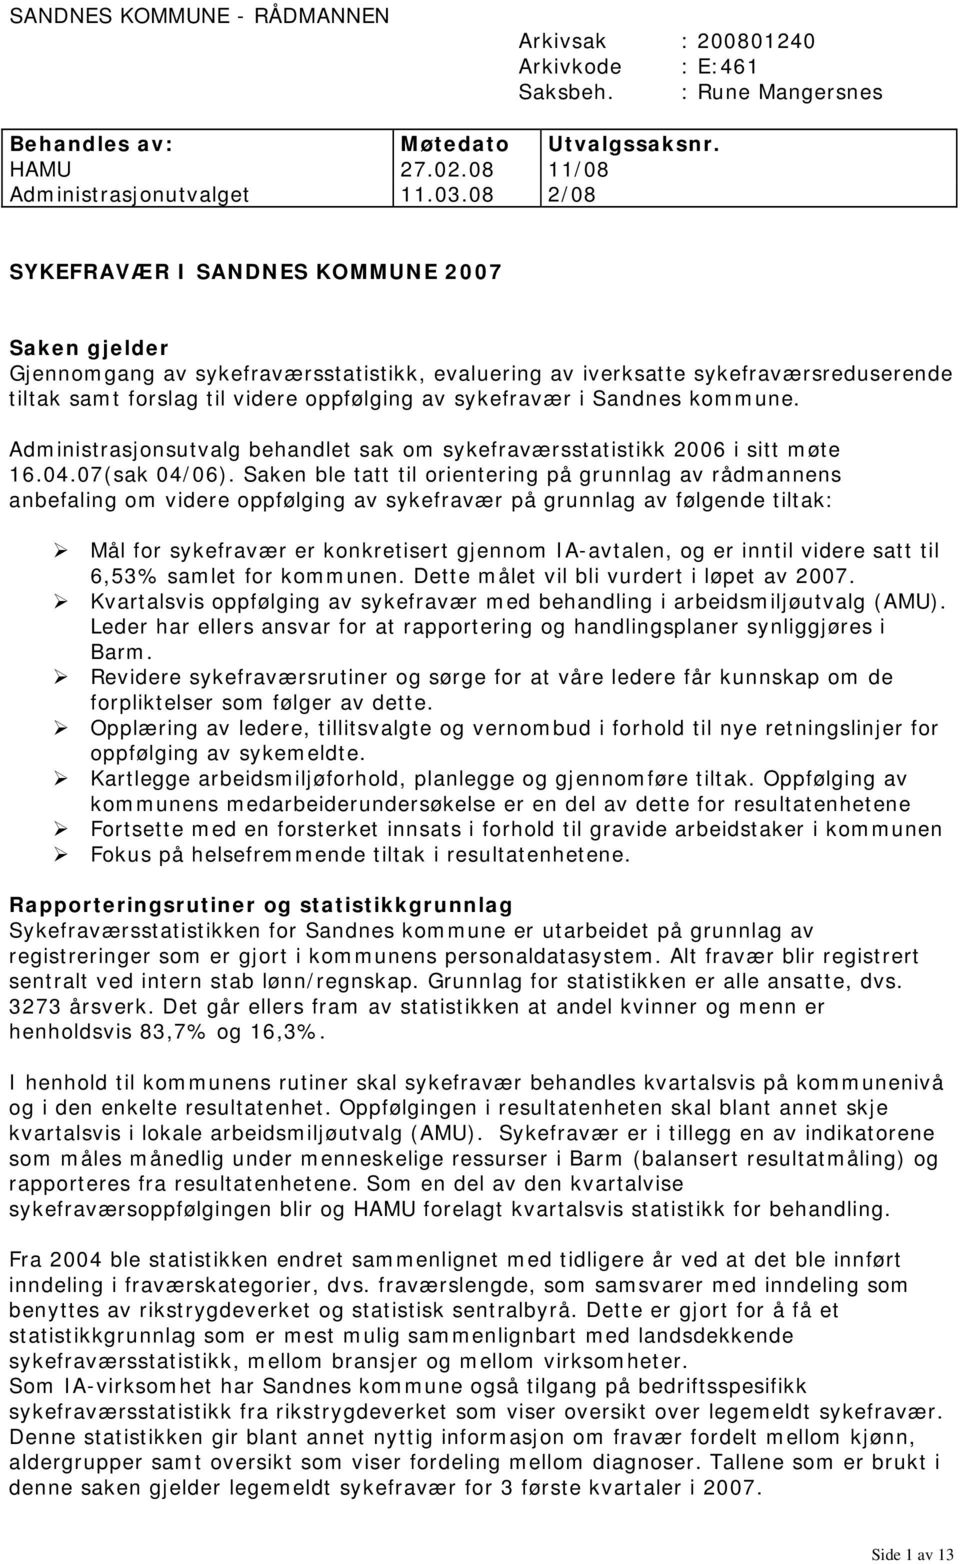 Sandnes kommune. Administrasjonsutvalg behandlet sak om sykefraværsstatistikk 2006 i sitt møte 16.04.07(sak 04/06).